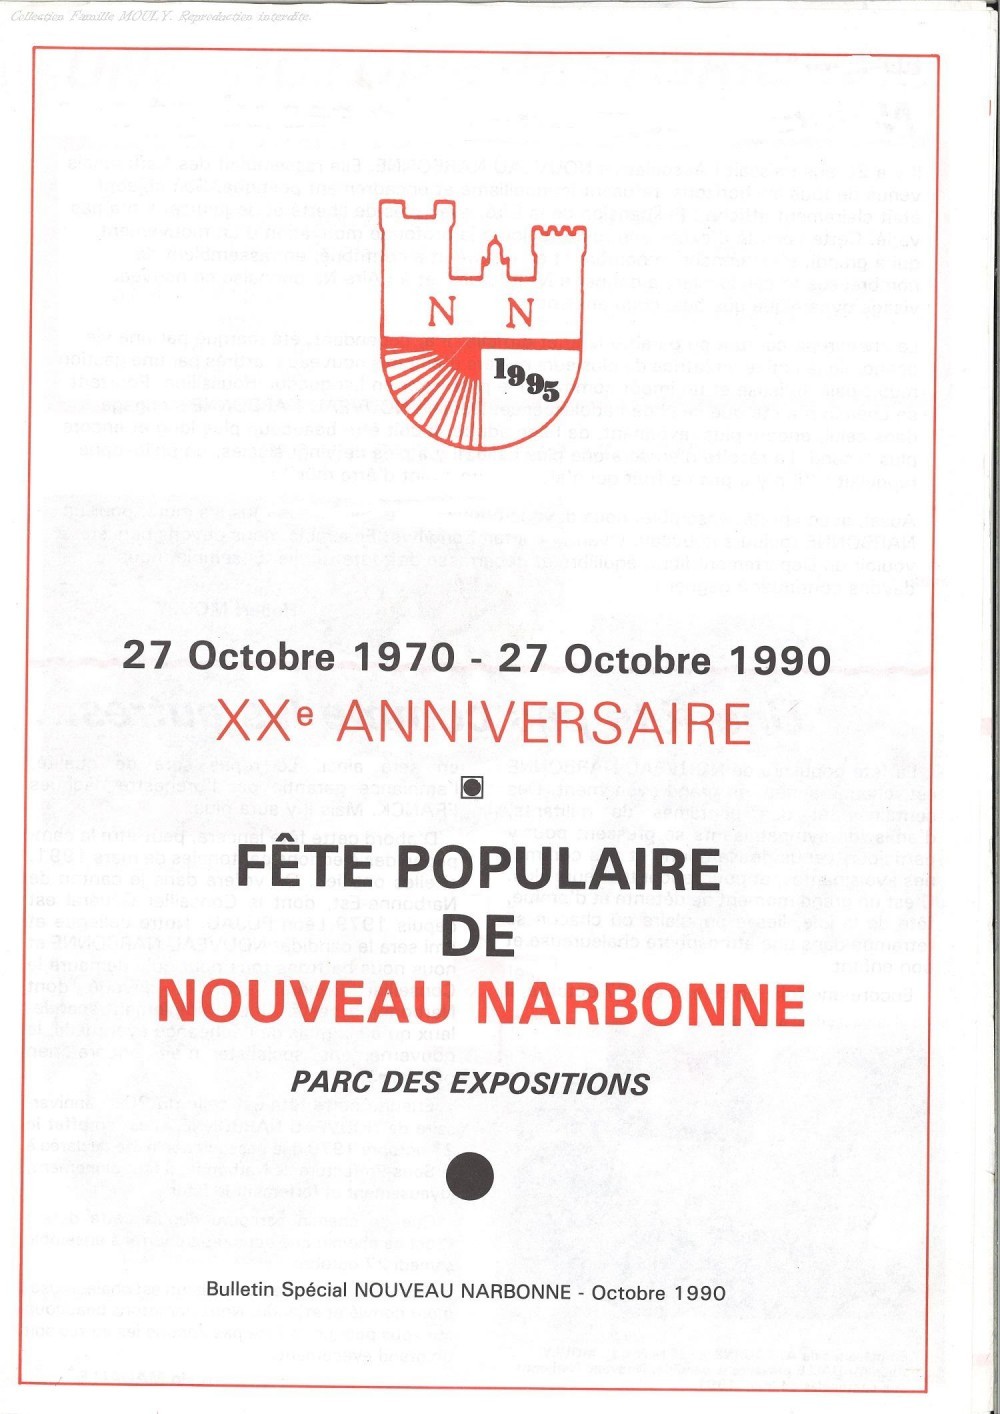 Bulletin Nouveau Narbonne octobre 1990